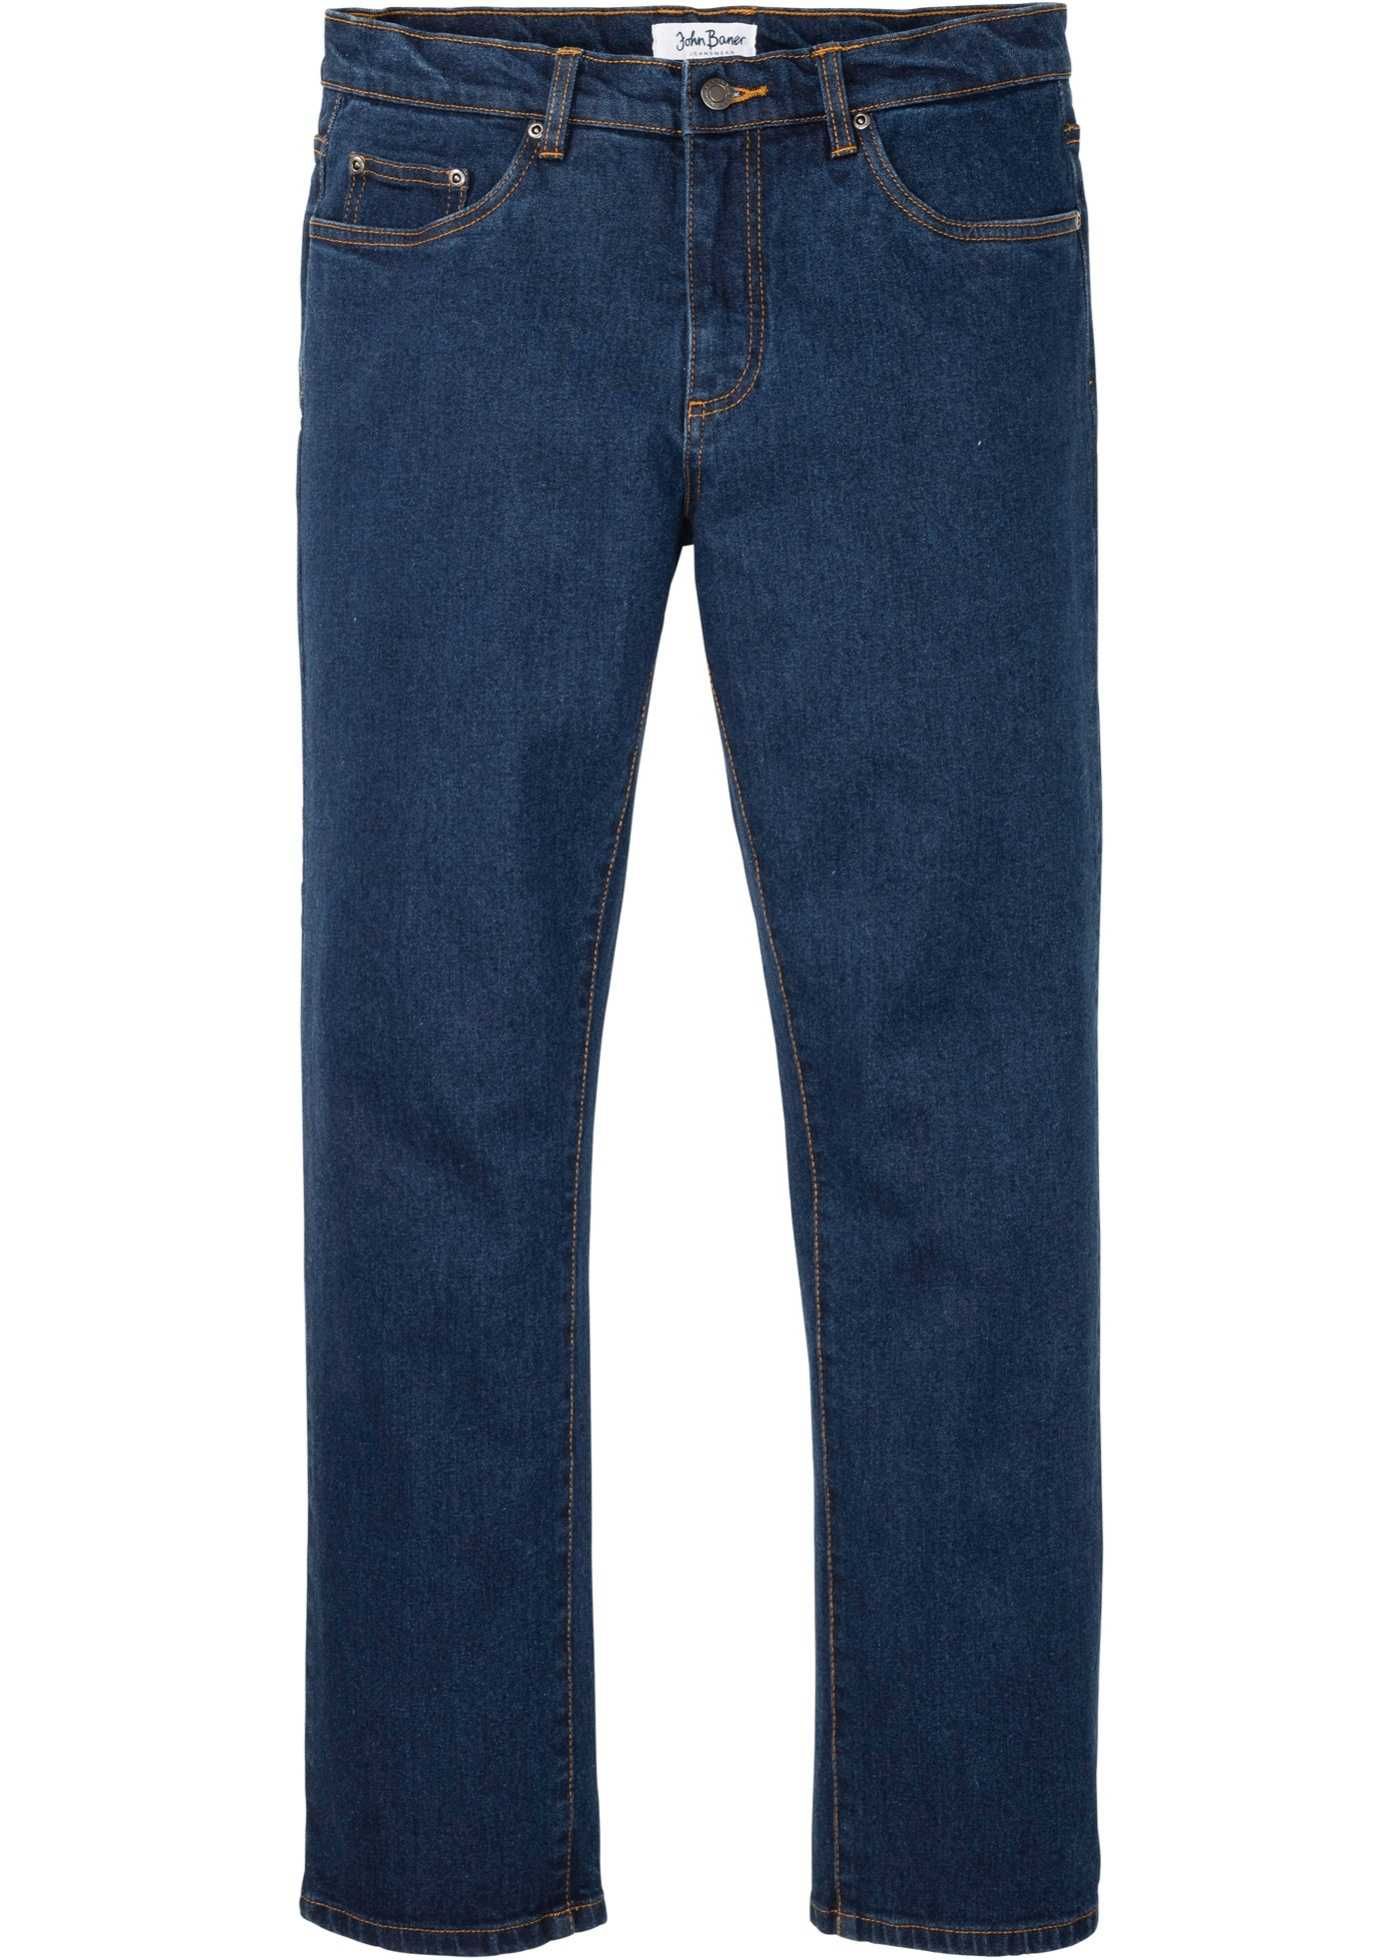 Jeans męskie niebieskie klasyczne ( Regular Fit ) Rozmiar 60